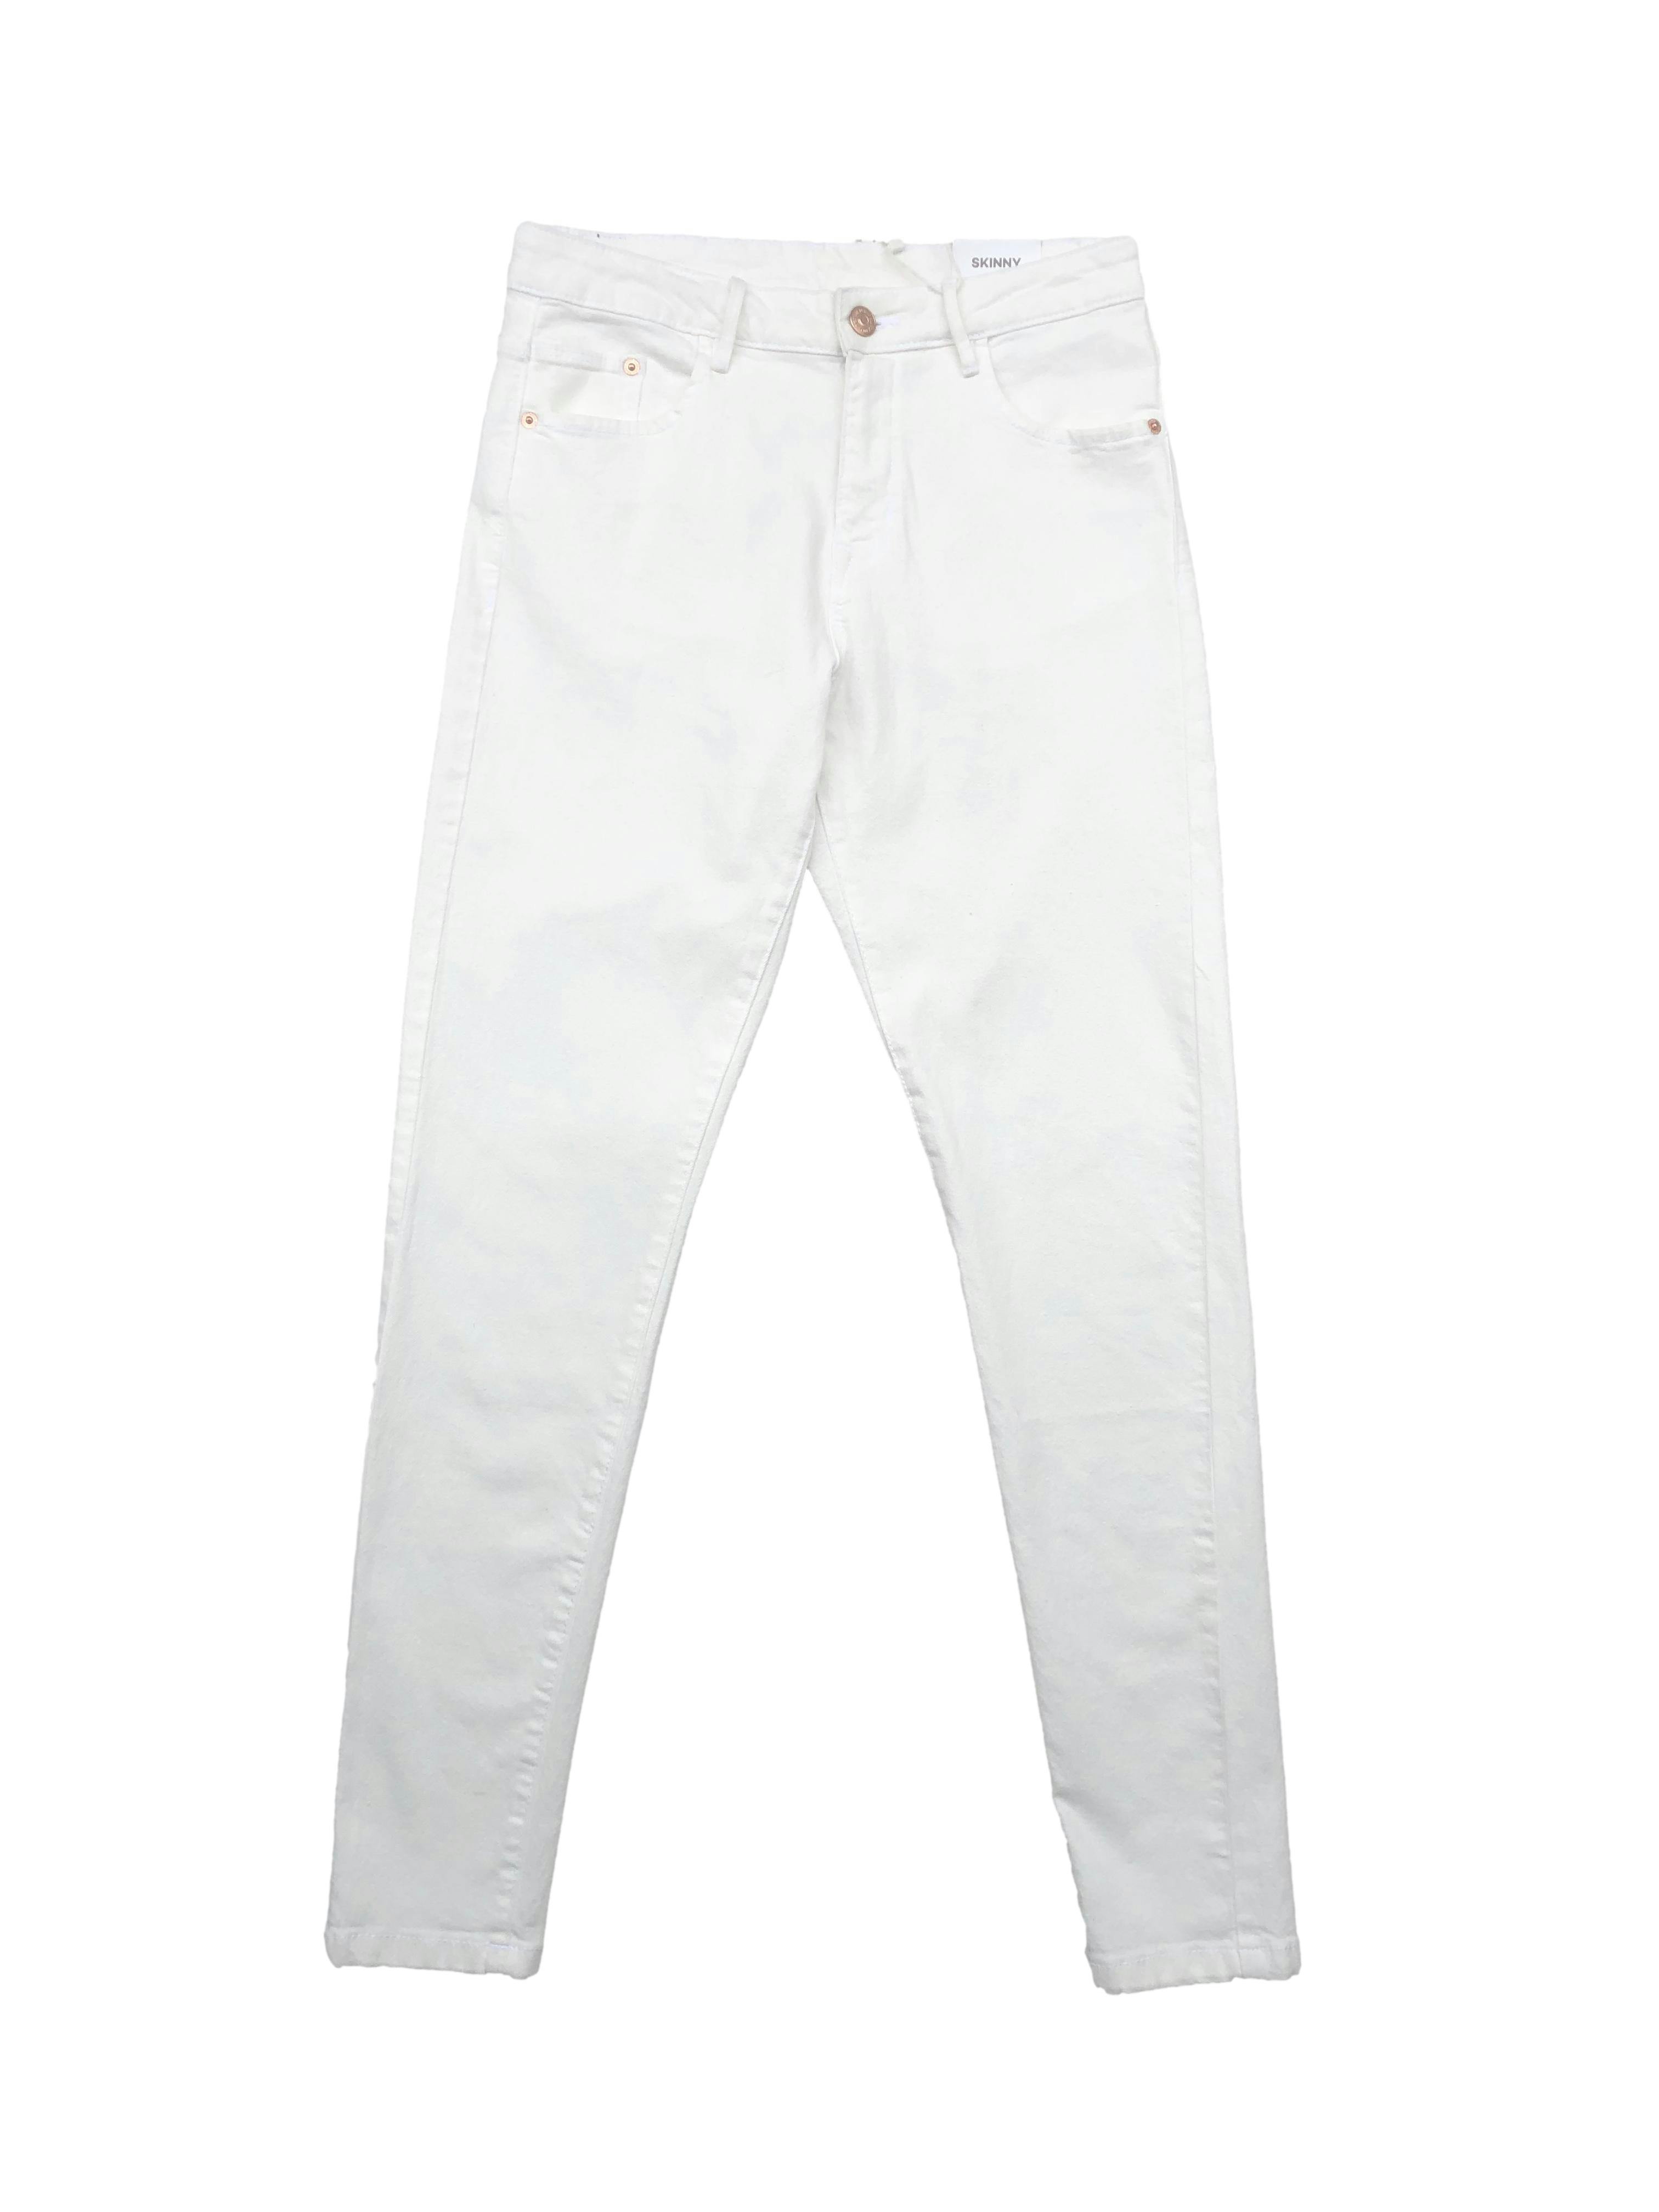 Skinny jean blanco Unit, bolsillos delanteros y en la parte de atrás, cierre. Cintura: 70cm, Tiro: 25cm, Largo: 96cm. Nuevo con etiqueta.